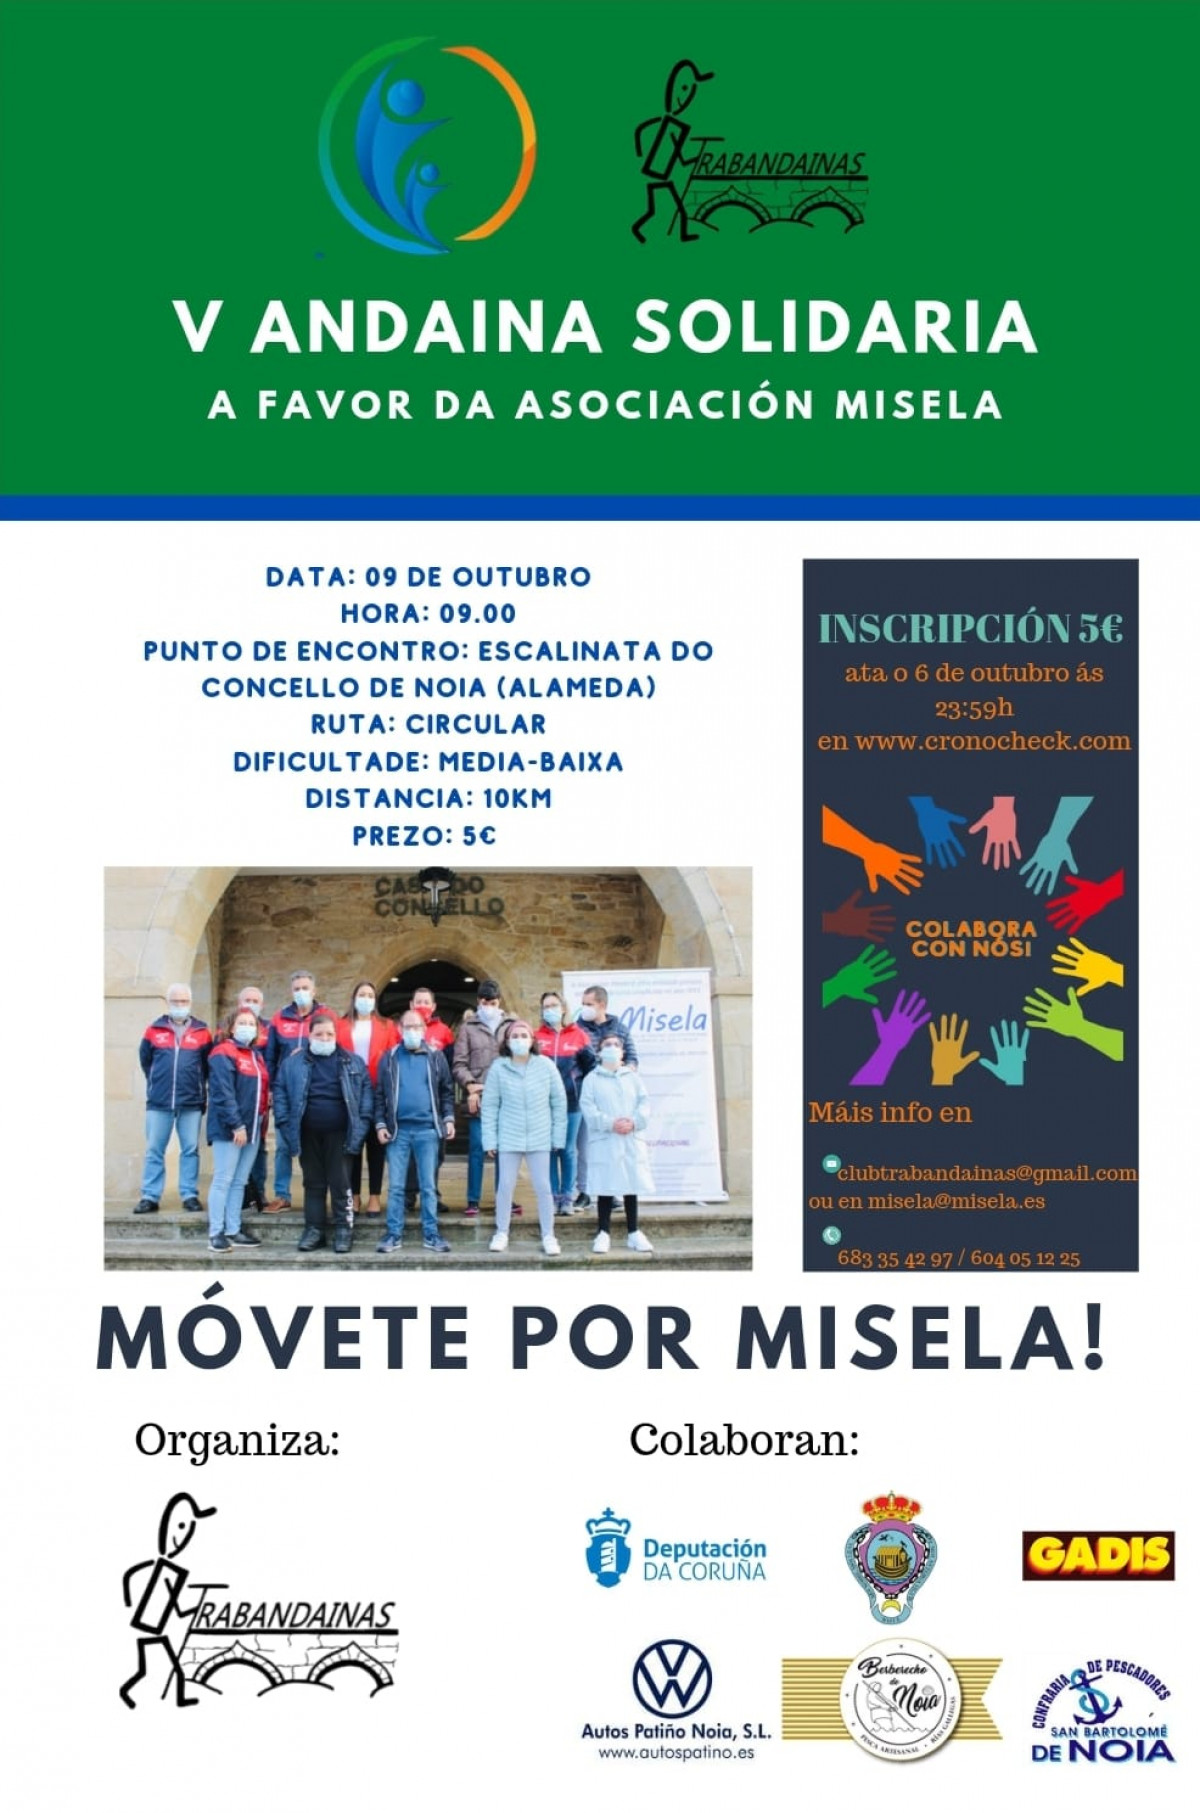 V Andaina Solidaria a favor de Misela - #MóveteporMisela